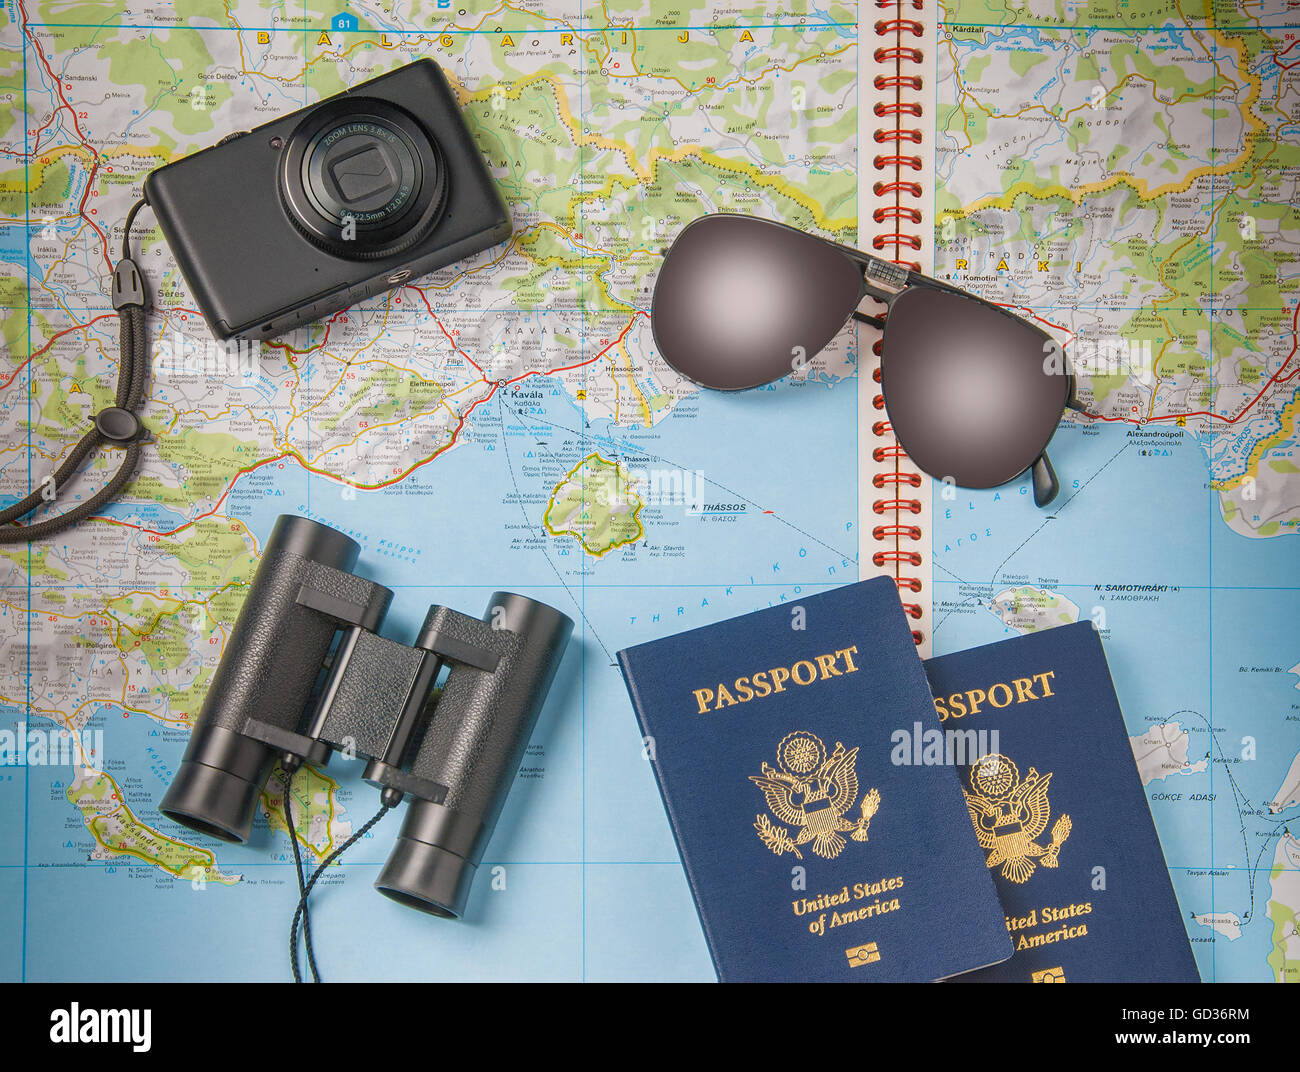 Las vacaciones de verano, el turismo y los objetos concepto - Cierre de ropa, cámara, binoculares, pasaportes y mapa de viaje Foto de stock